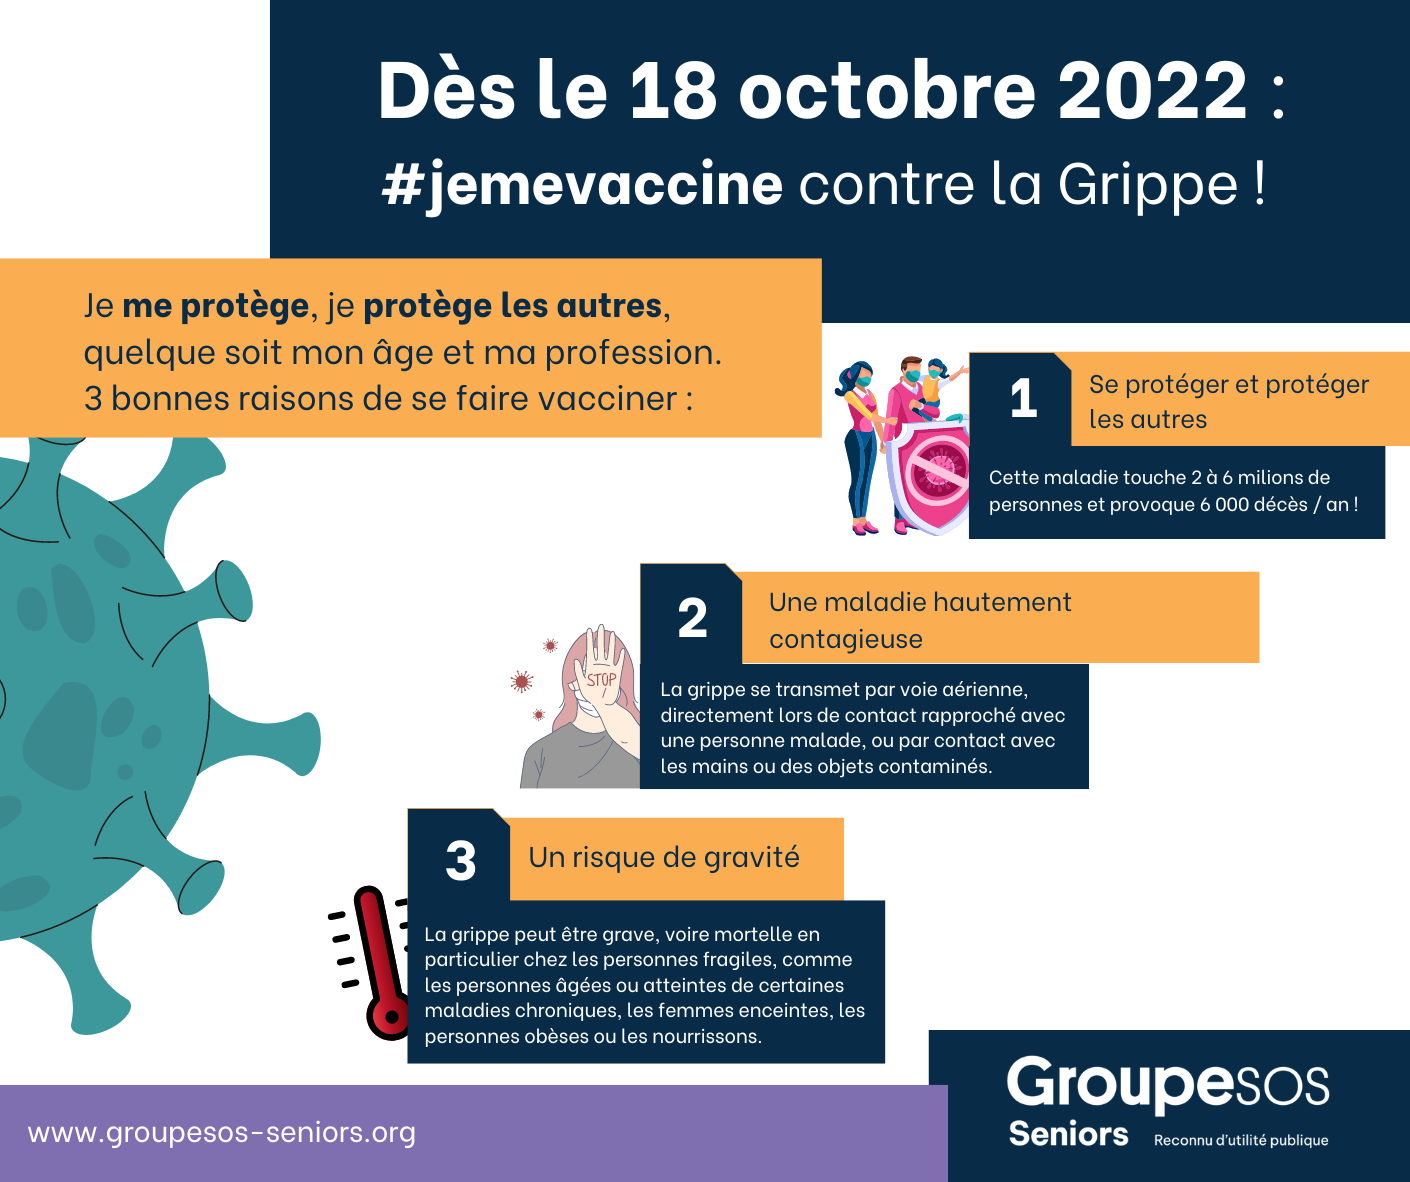 Dès le 18 octobre, #jemevaccine contre la Grippe !